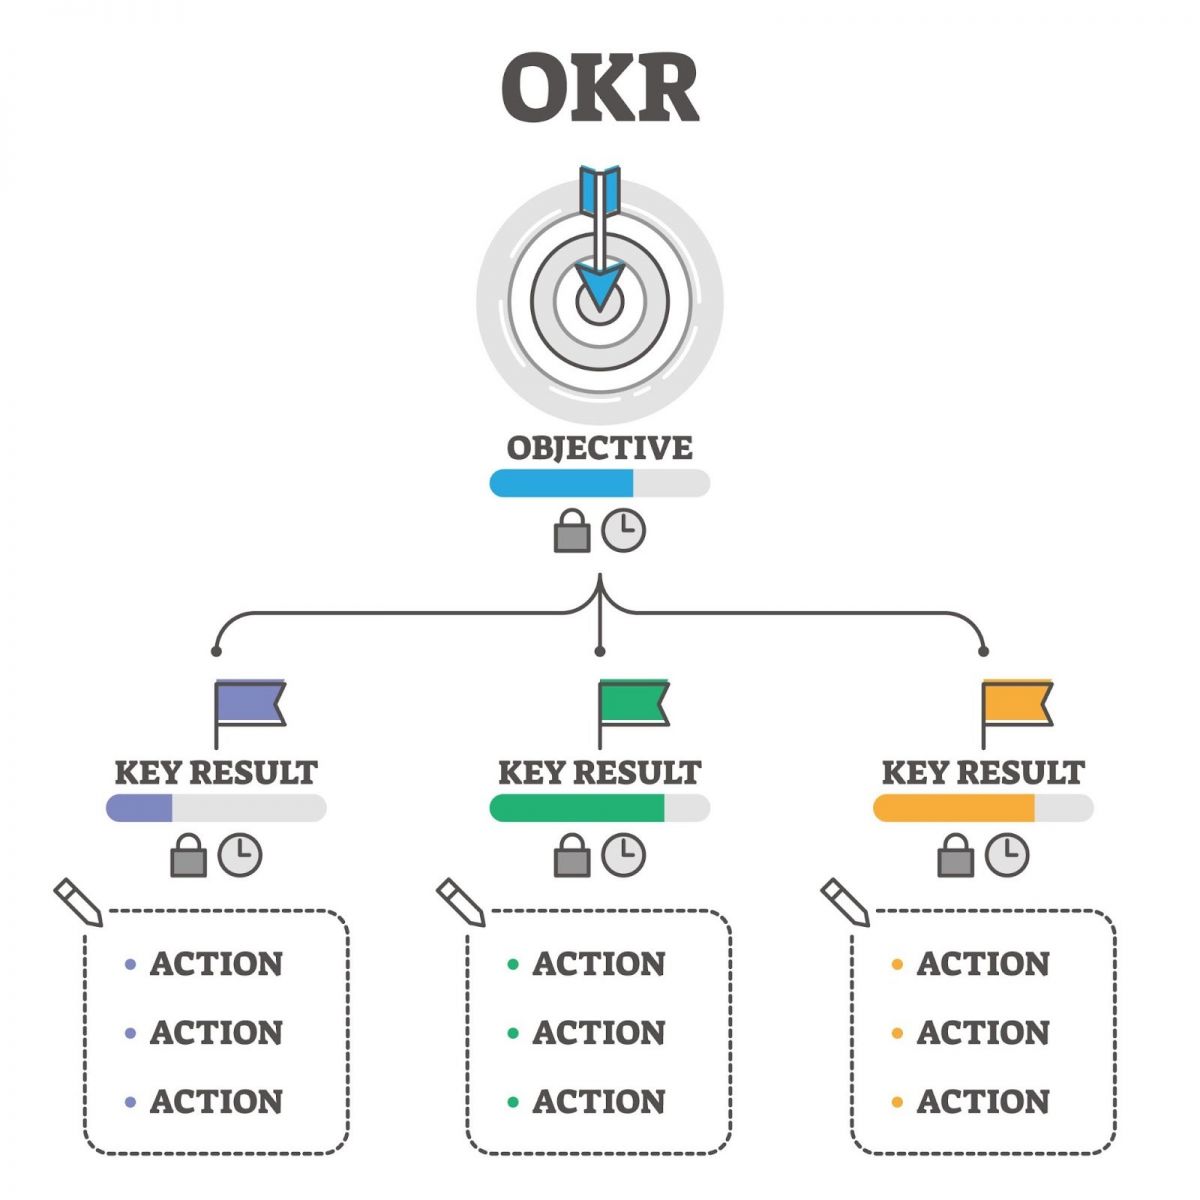 OKRs - Phương pháp quản lý, đặt mục tiêu phổ biến tại các tập đoàn công nghệ lớn trên toàn cầu